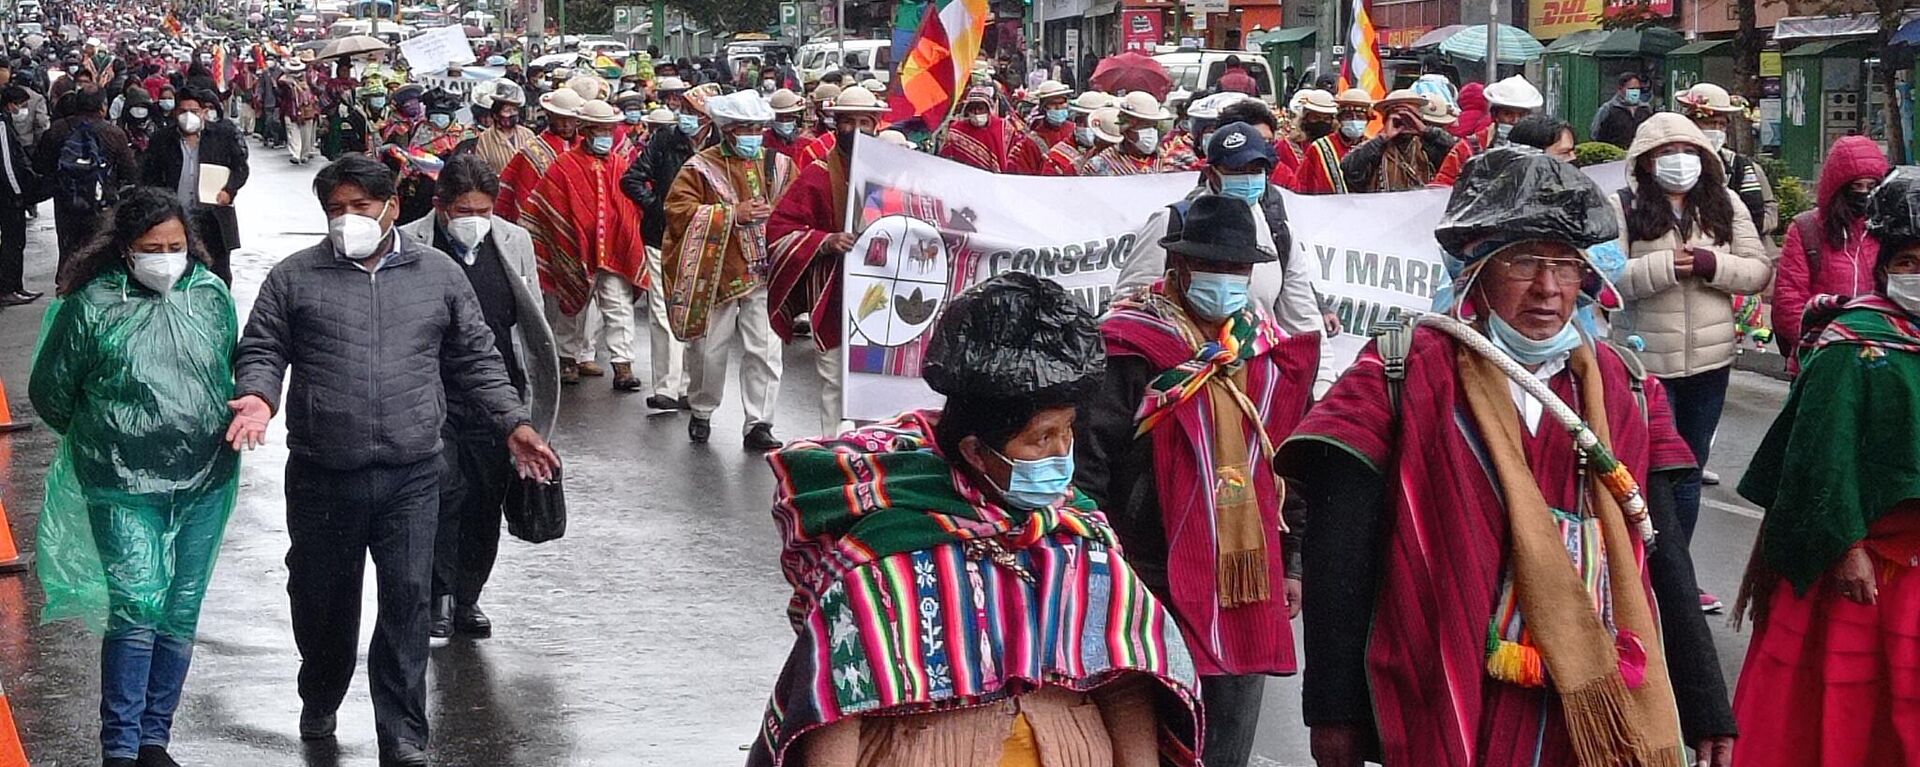 Indígenas y campesinos marchan en La Paz, Bolivia - Sputnik Mundo, 1920, 27.09.2021